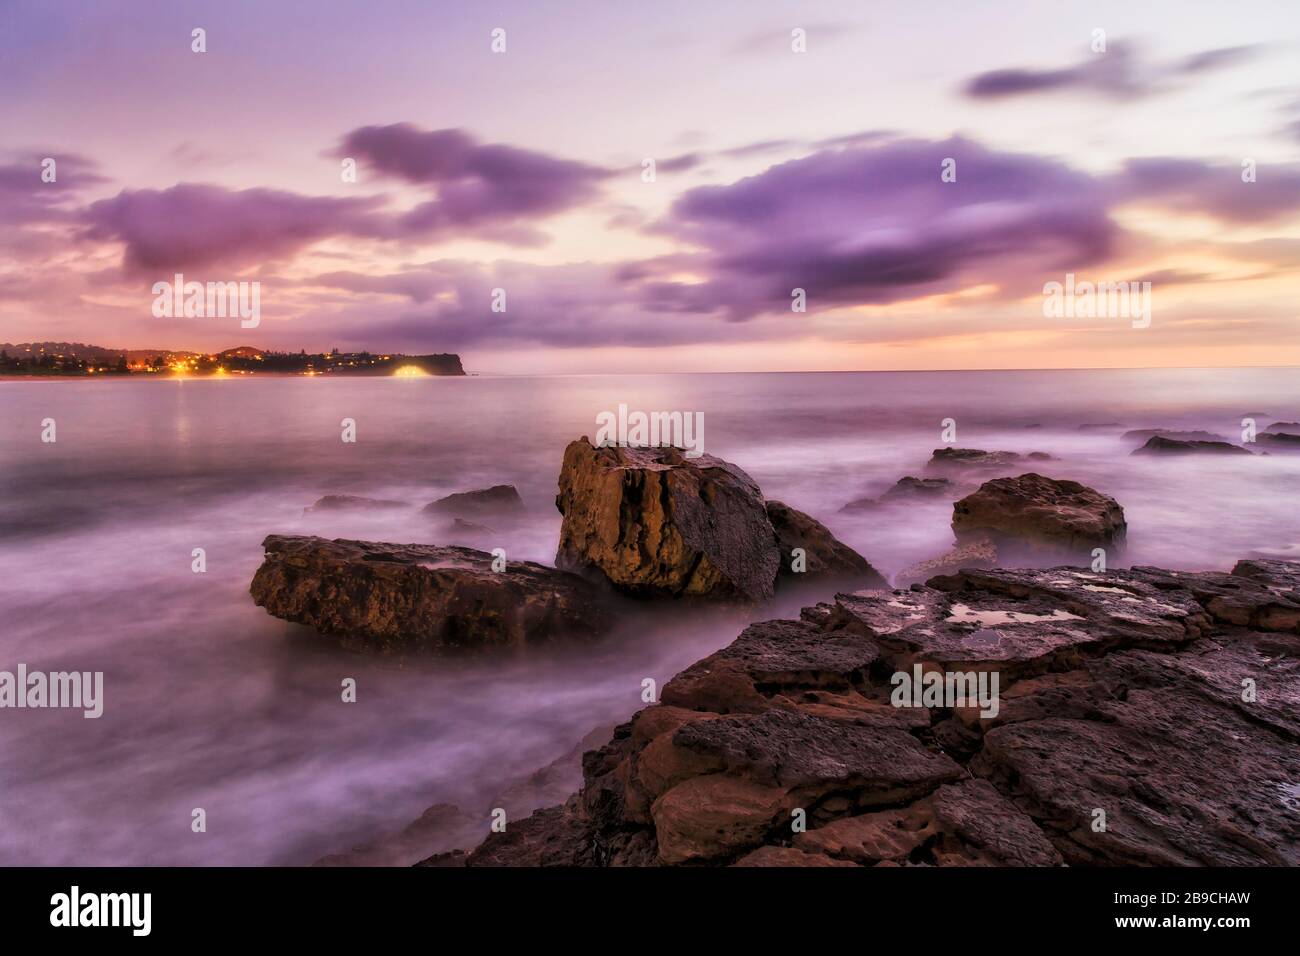 Las rocas de arenisca mojada de Turimetta se dirigen a las playas del norte de Sydney al amanecer. Foto de stock